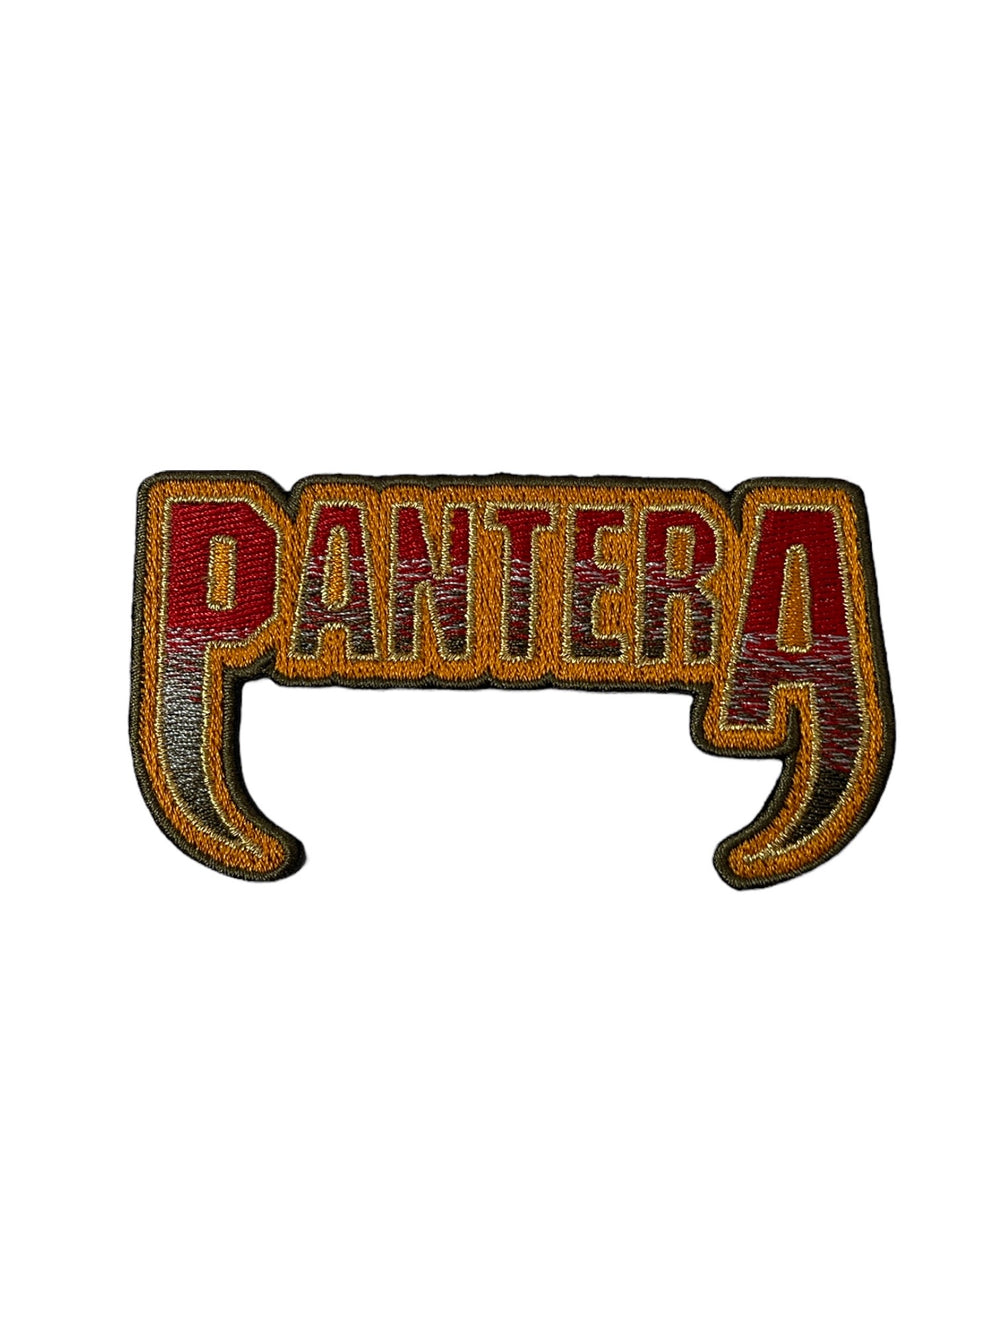 Pantera Fangs Logo Glitter Effect Official Woven Patch Brand New